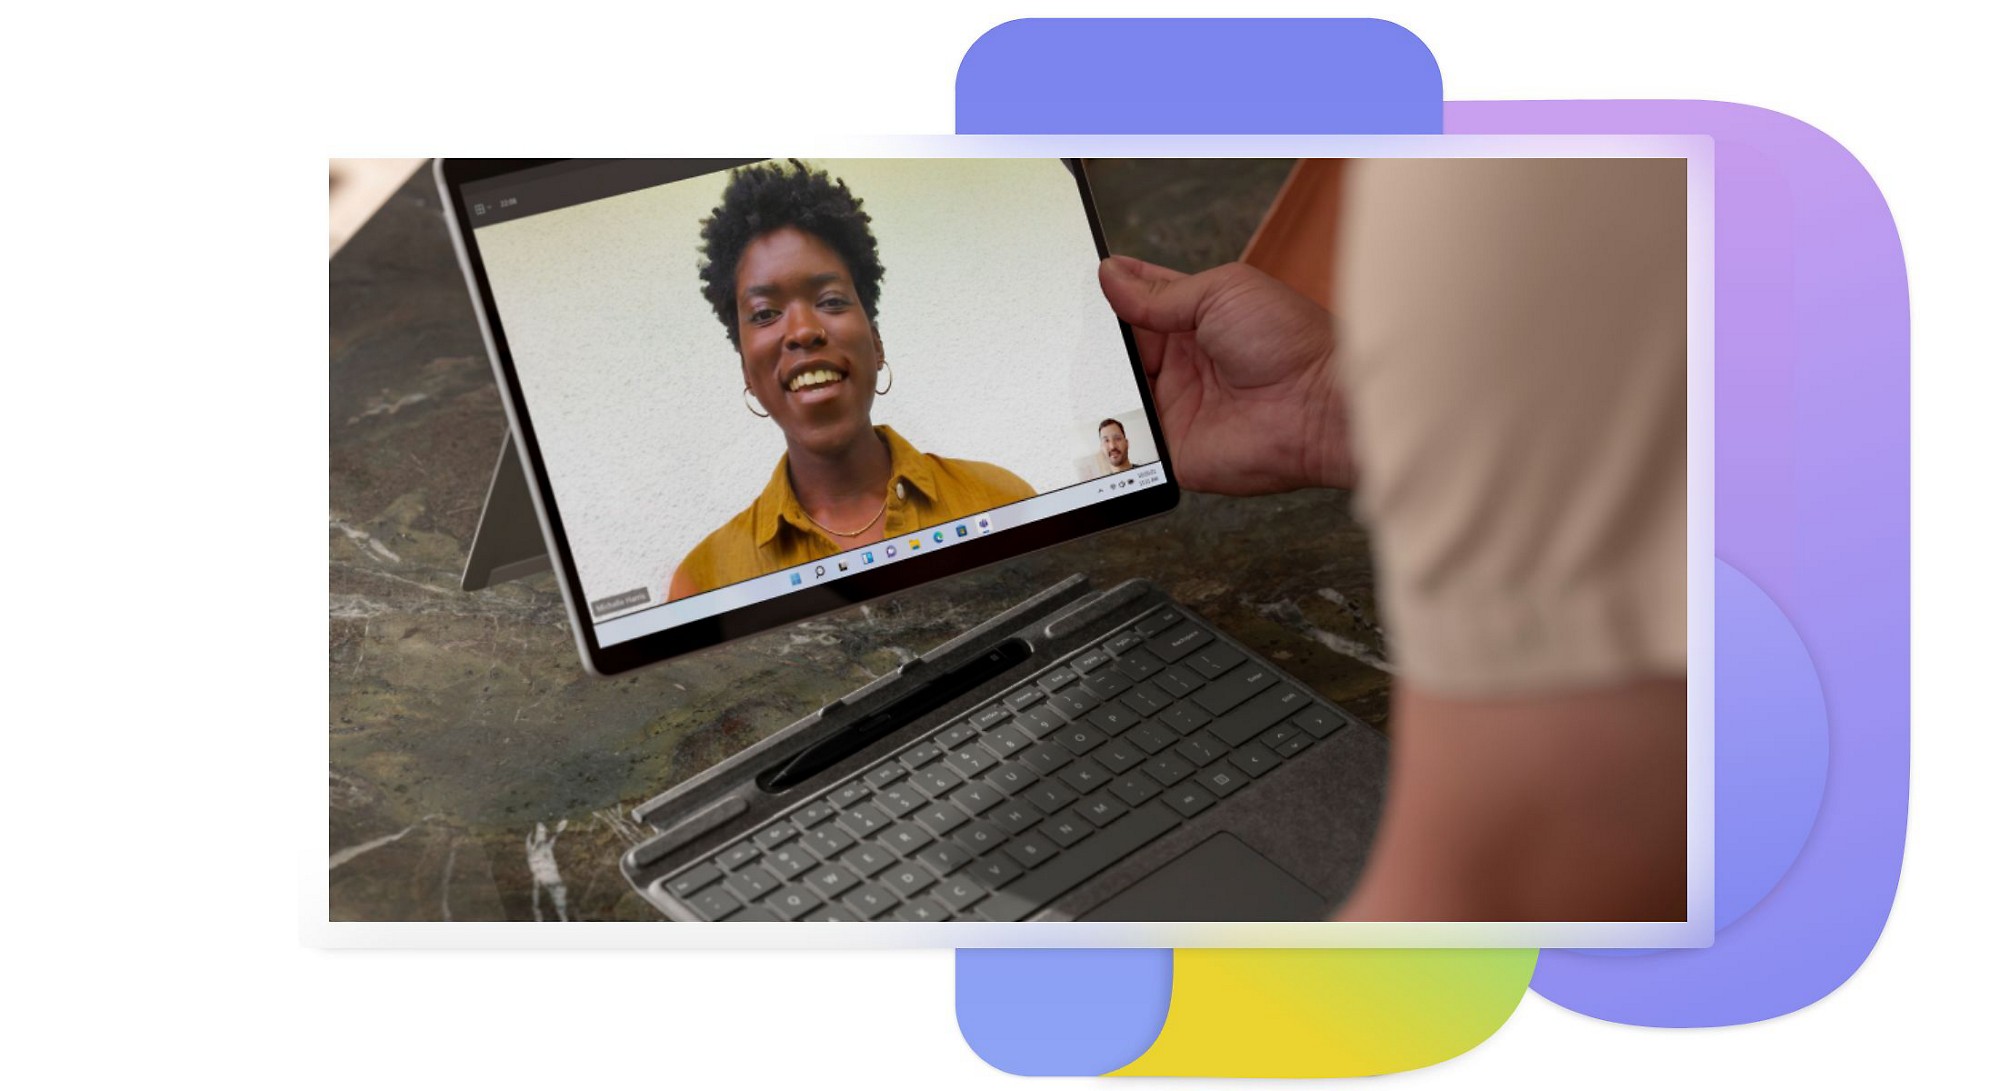 Tablet zobrazujúci dvoch ľudí, ktorí sa zúčastňujú na videohovore v aplikácii Teams.